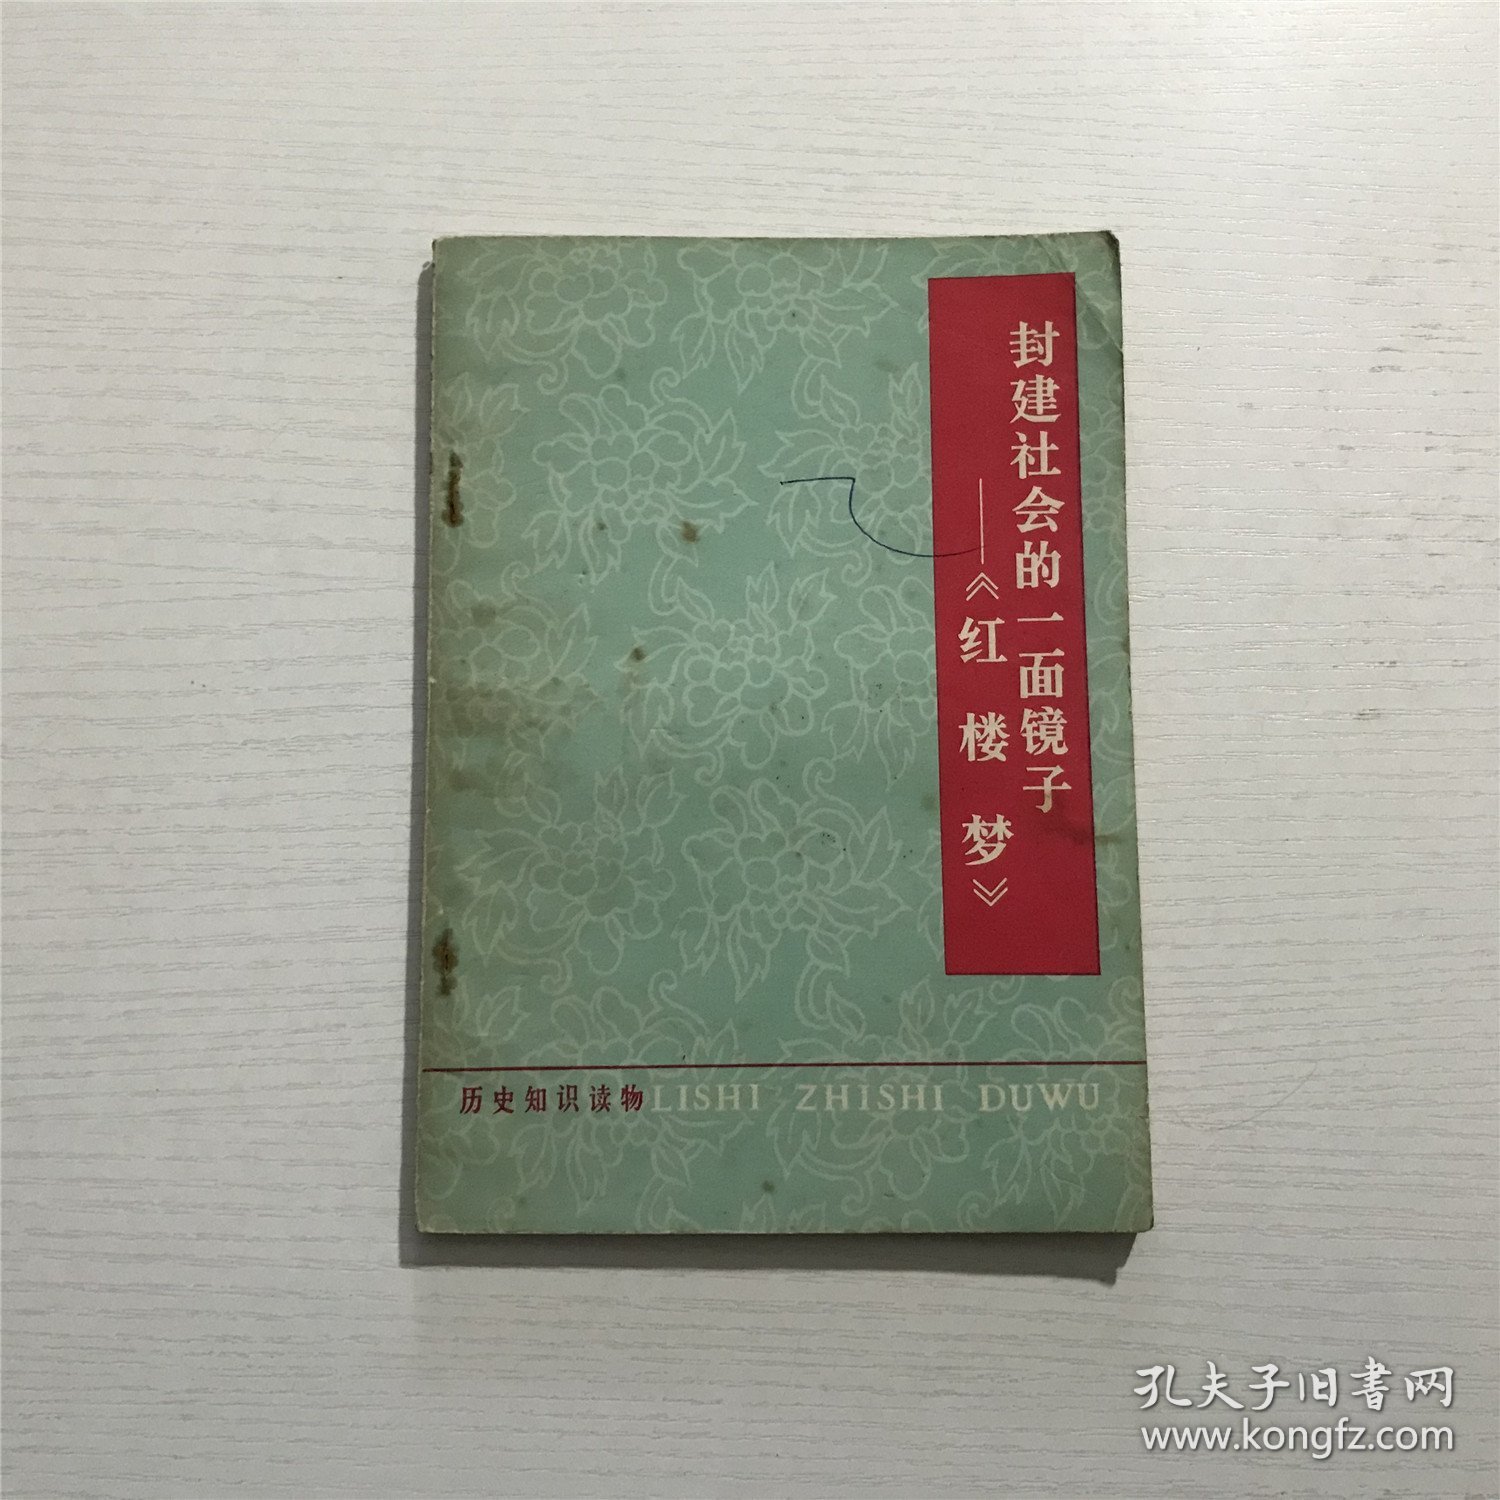 封建社会的一面镜子《红楼梦》—— 中华书局1974年版